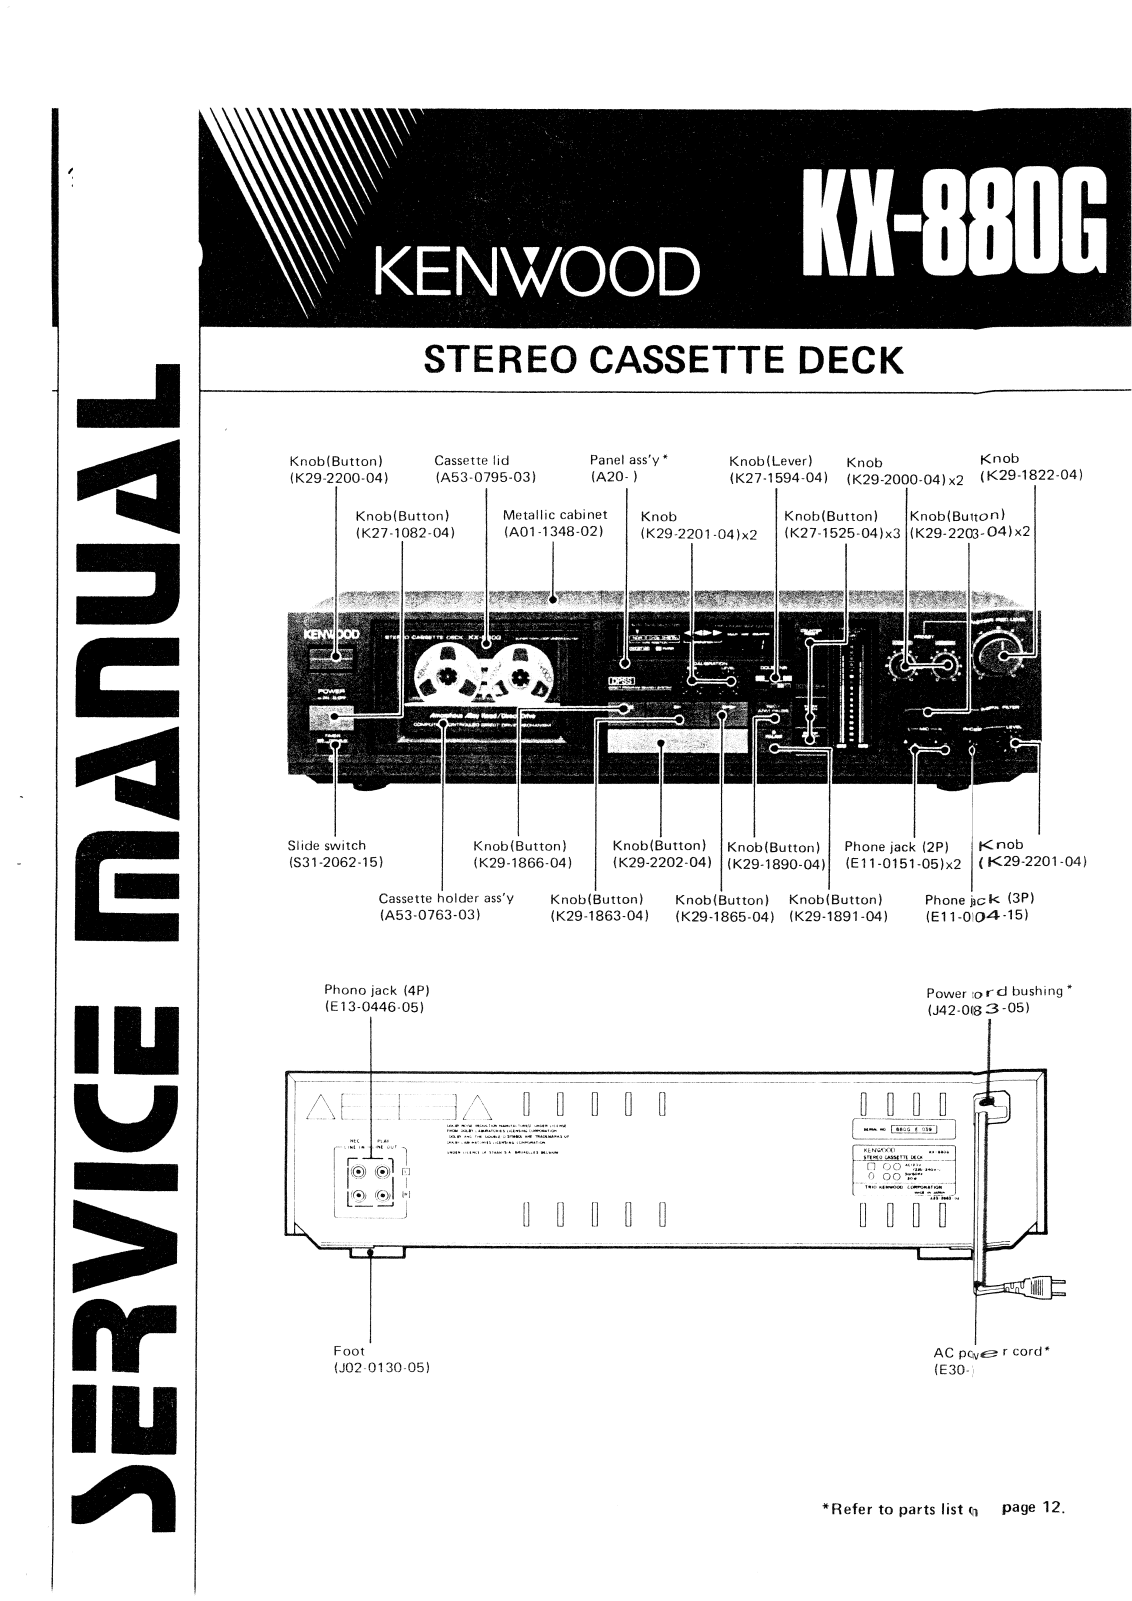 Kenwood KX-880-G Service manual